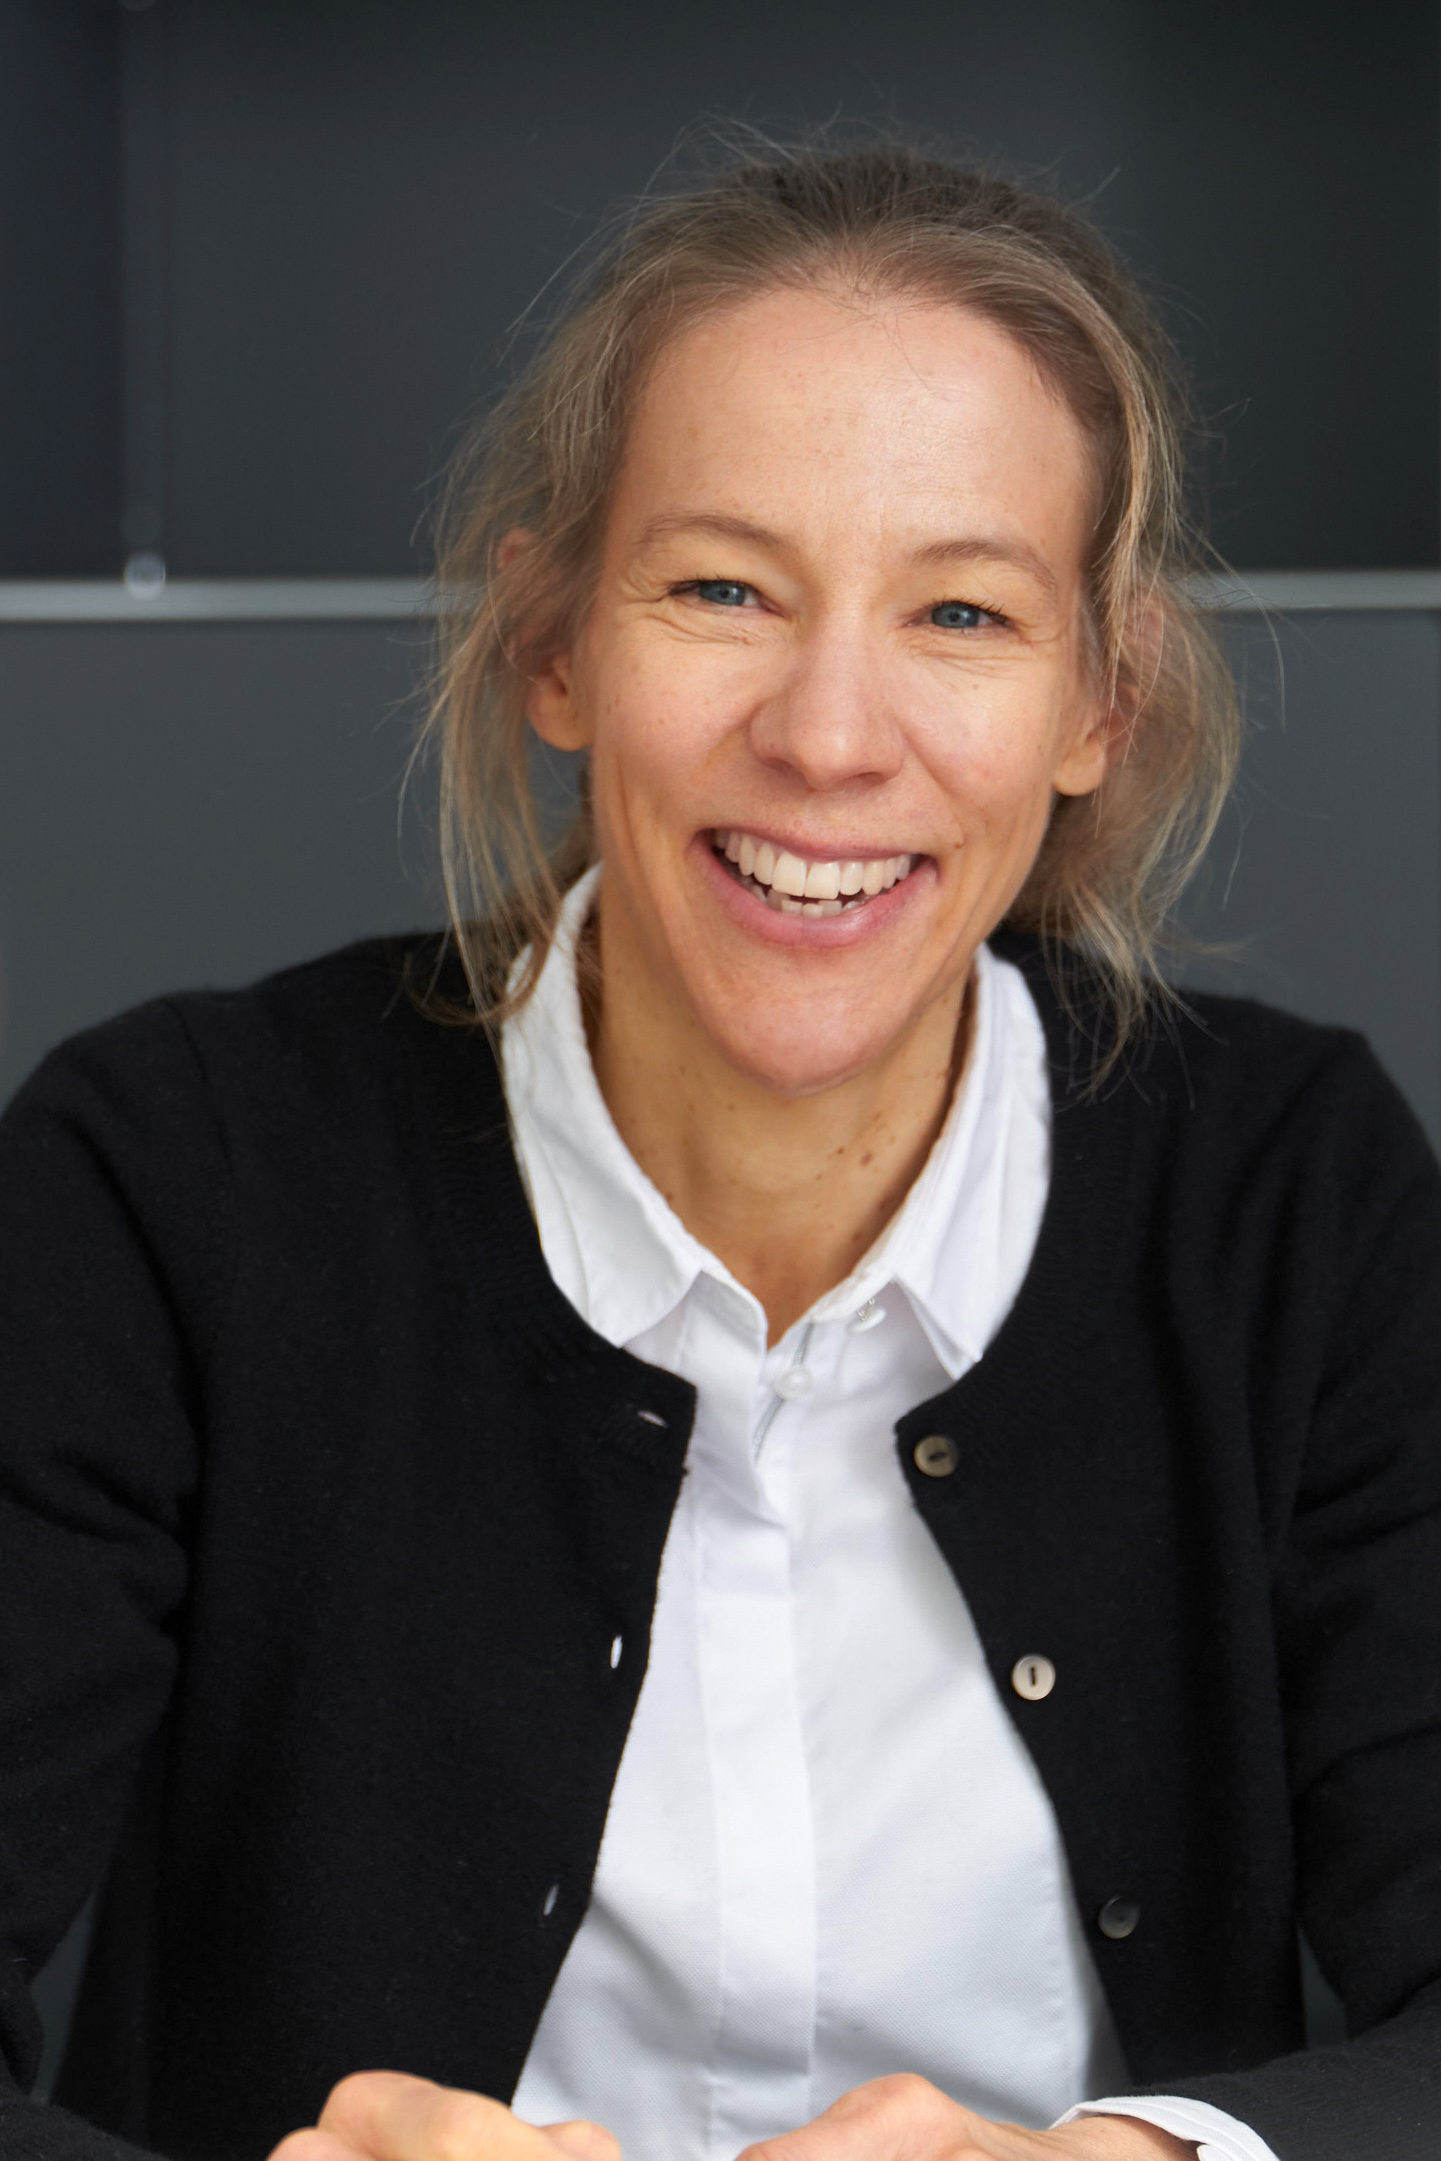 Ellen Bergman – Rechtsanwältin und Partner bei GreenGate Partners am Standort München